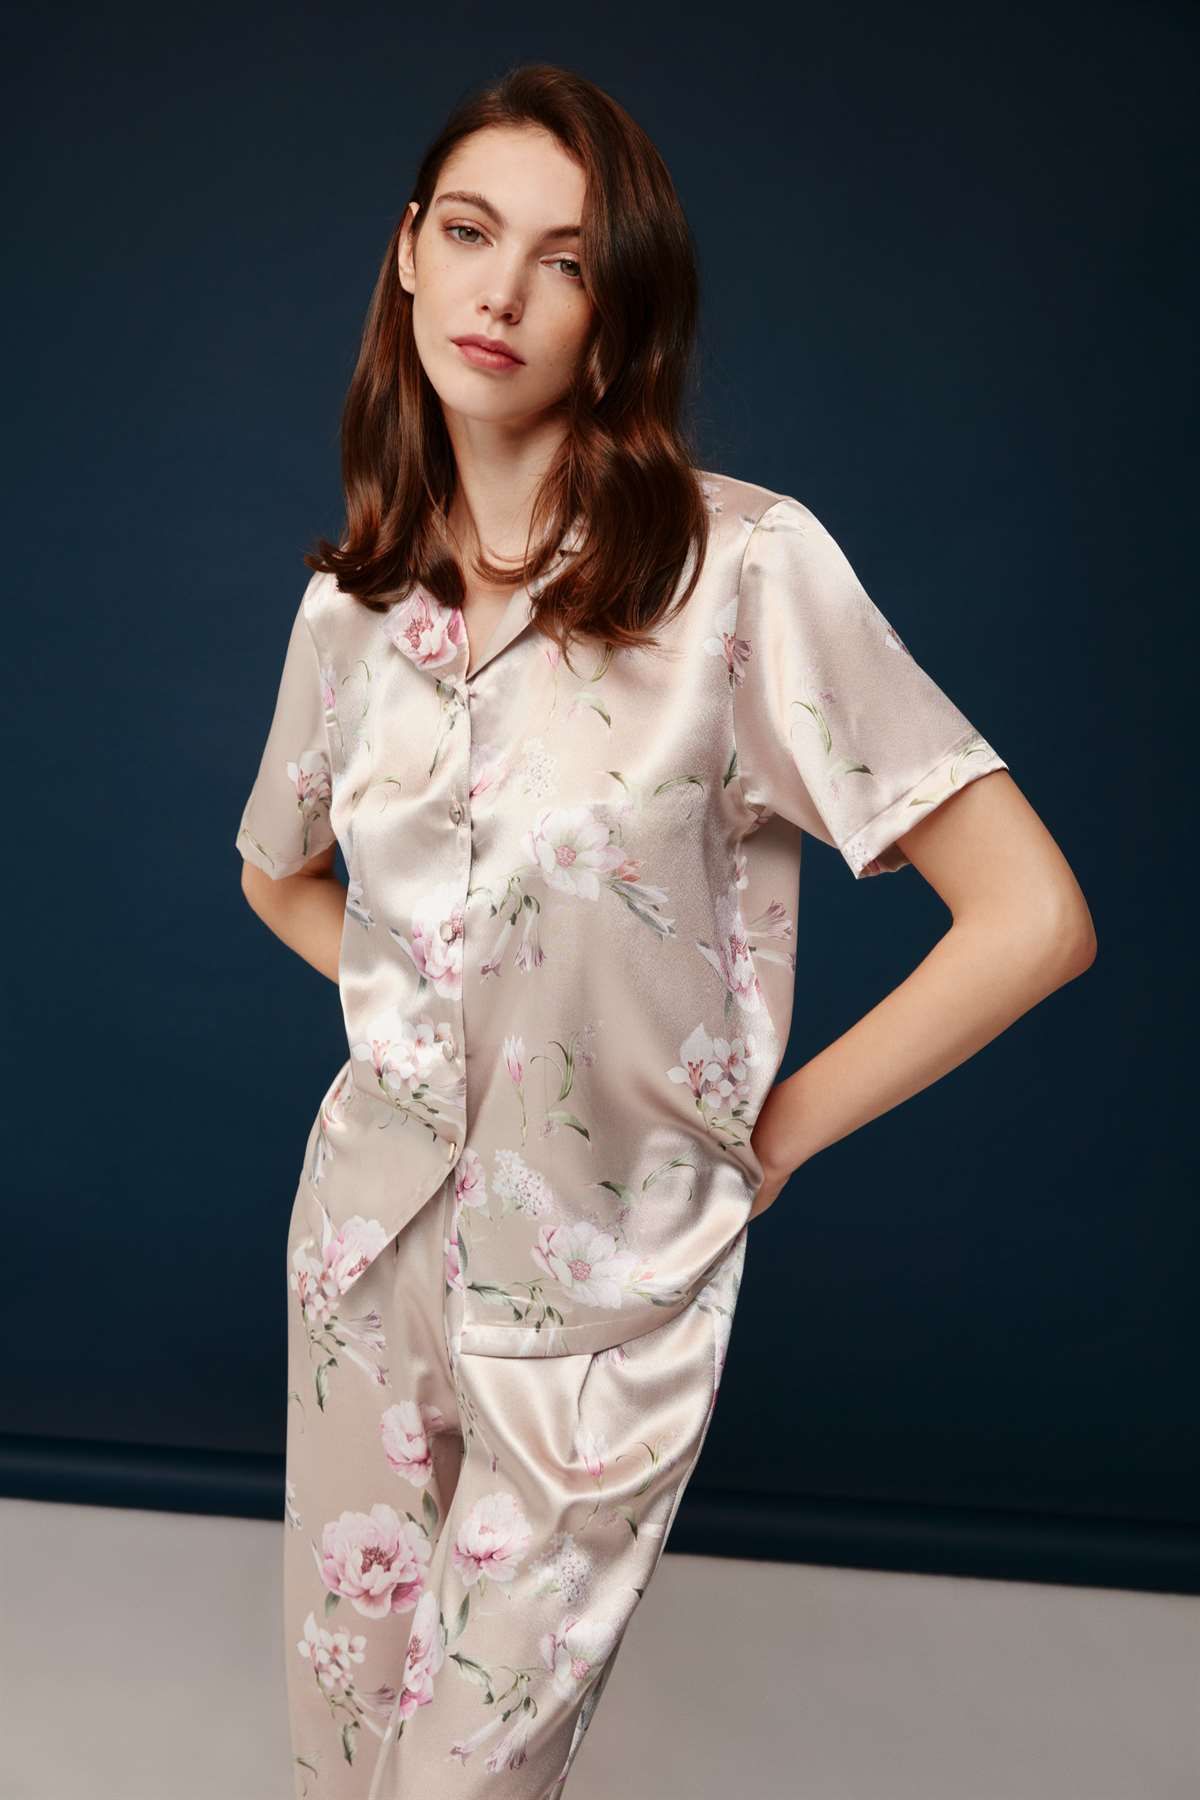 Bonnie Clyde - Kadın Baskılı Saten Pijama Takımı 30030